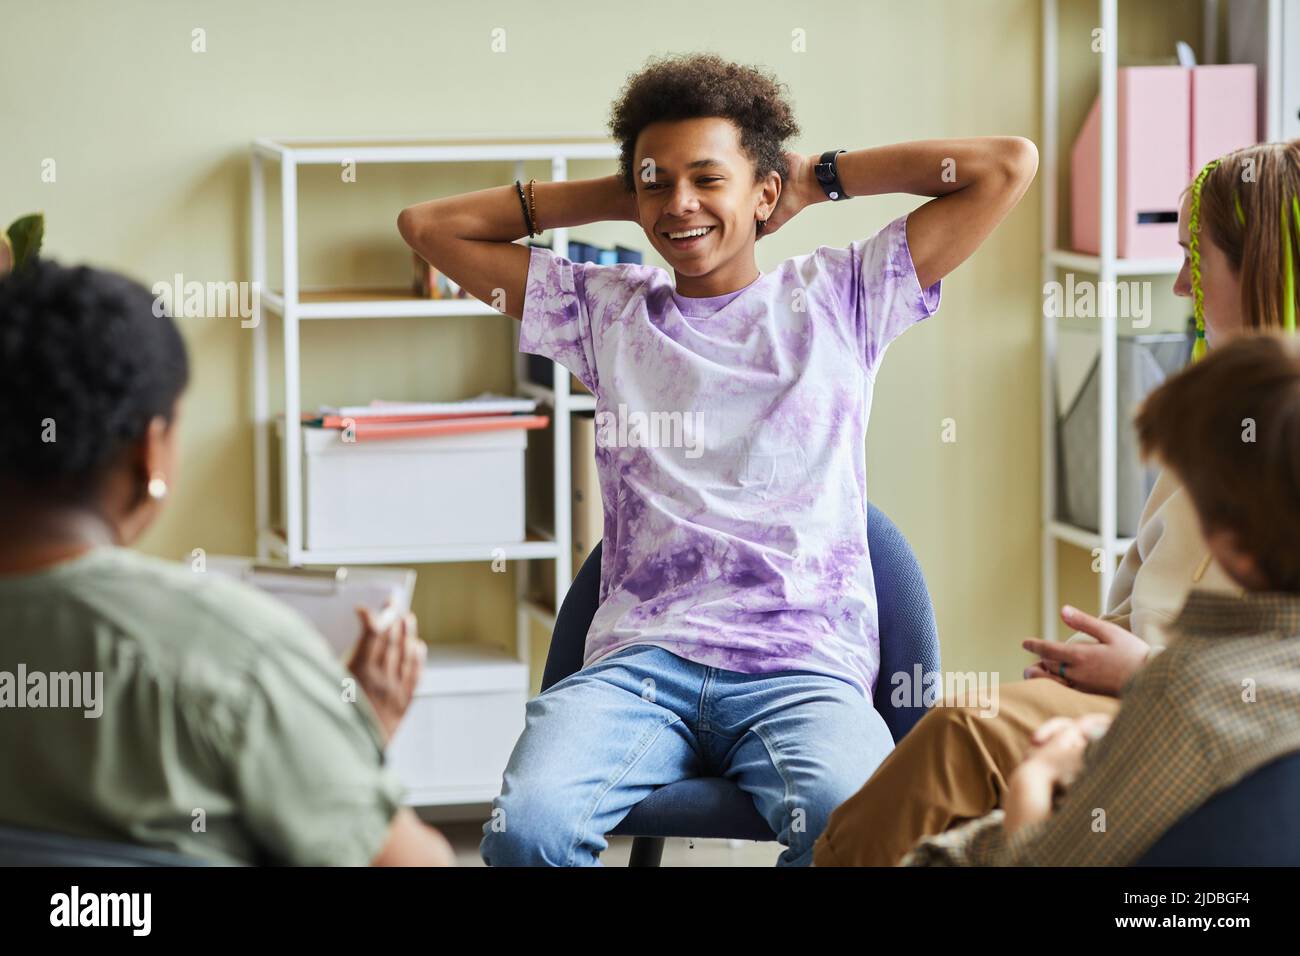 Afrikanischer Teenager, der auf einem Stuhl sitzt und lächelt und sich während einer psychologischen Sitzung mit der Gruppe und dem Psychologen schlecht benommen hat Stockfoto